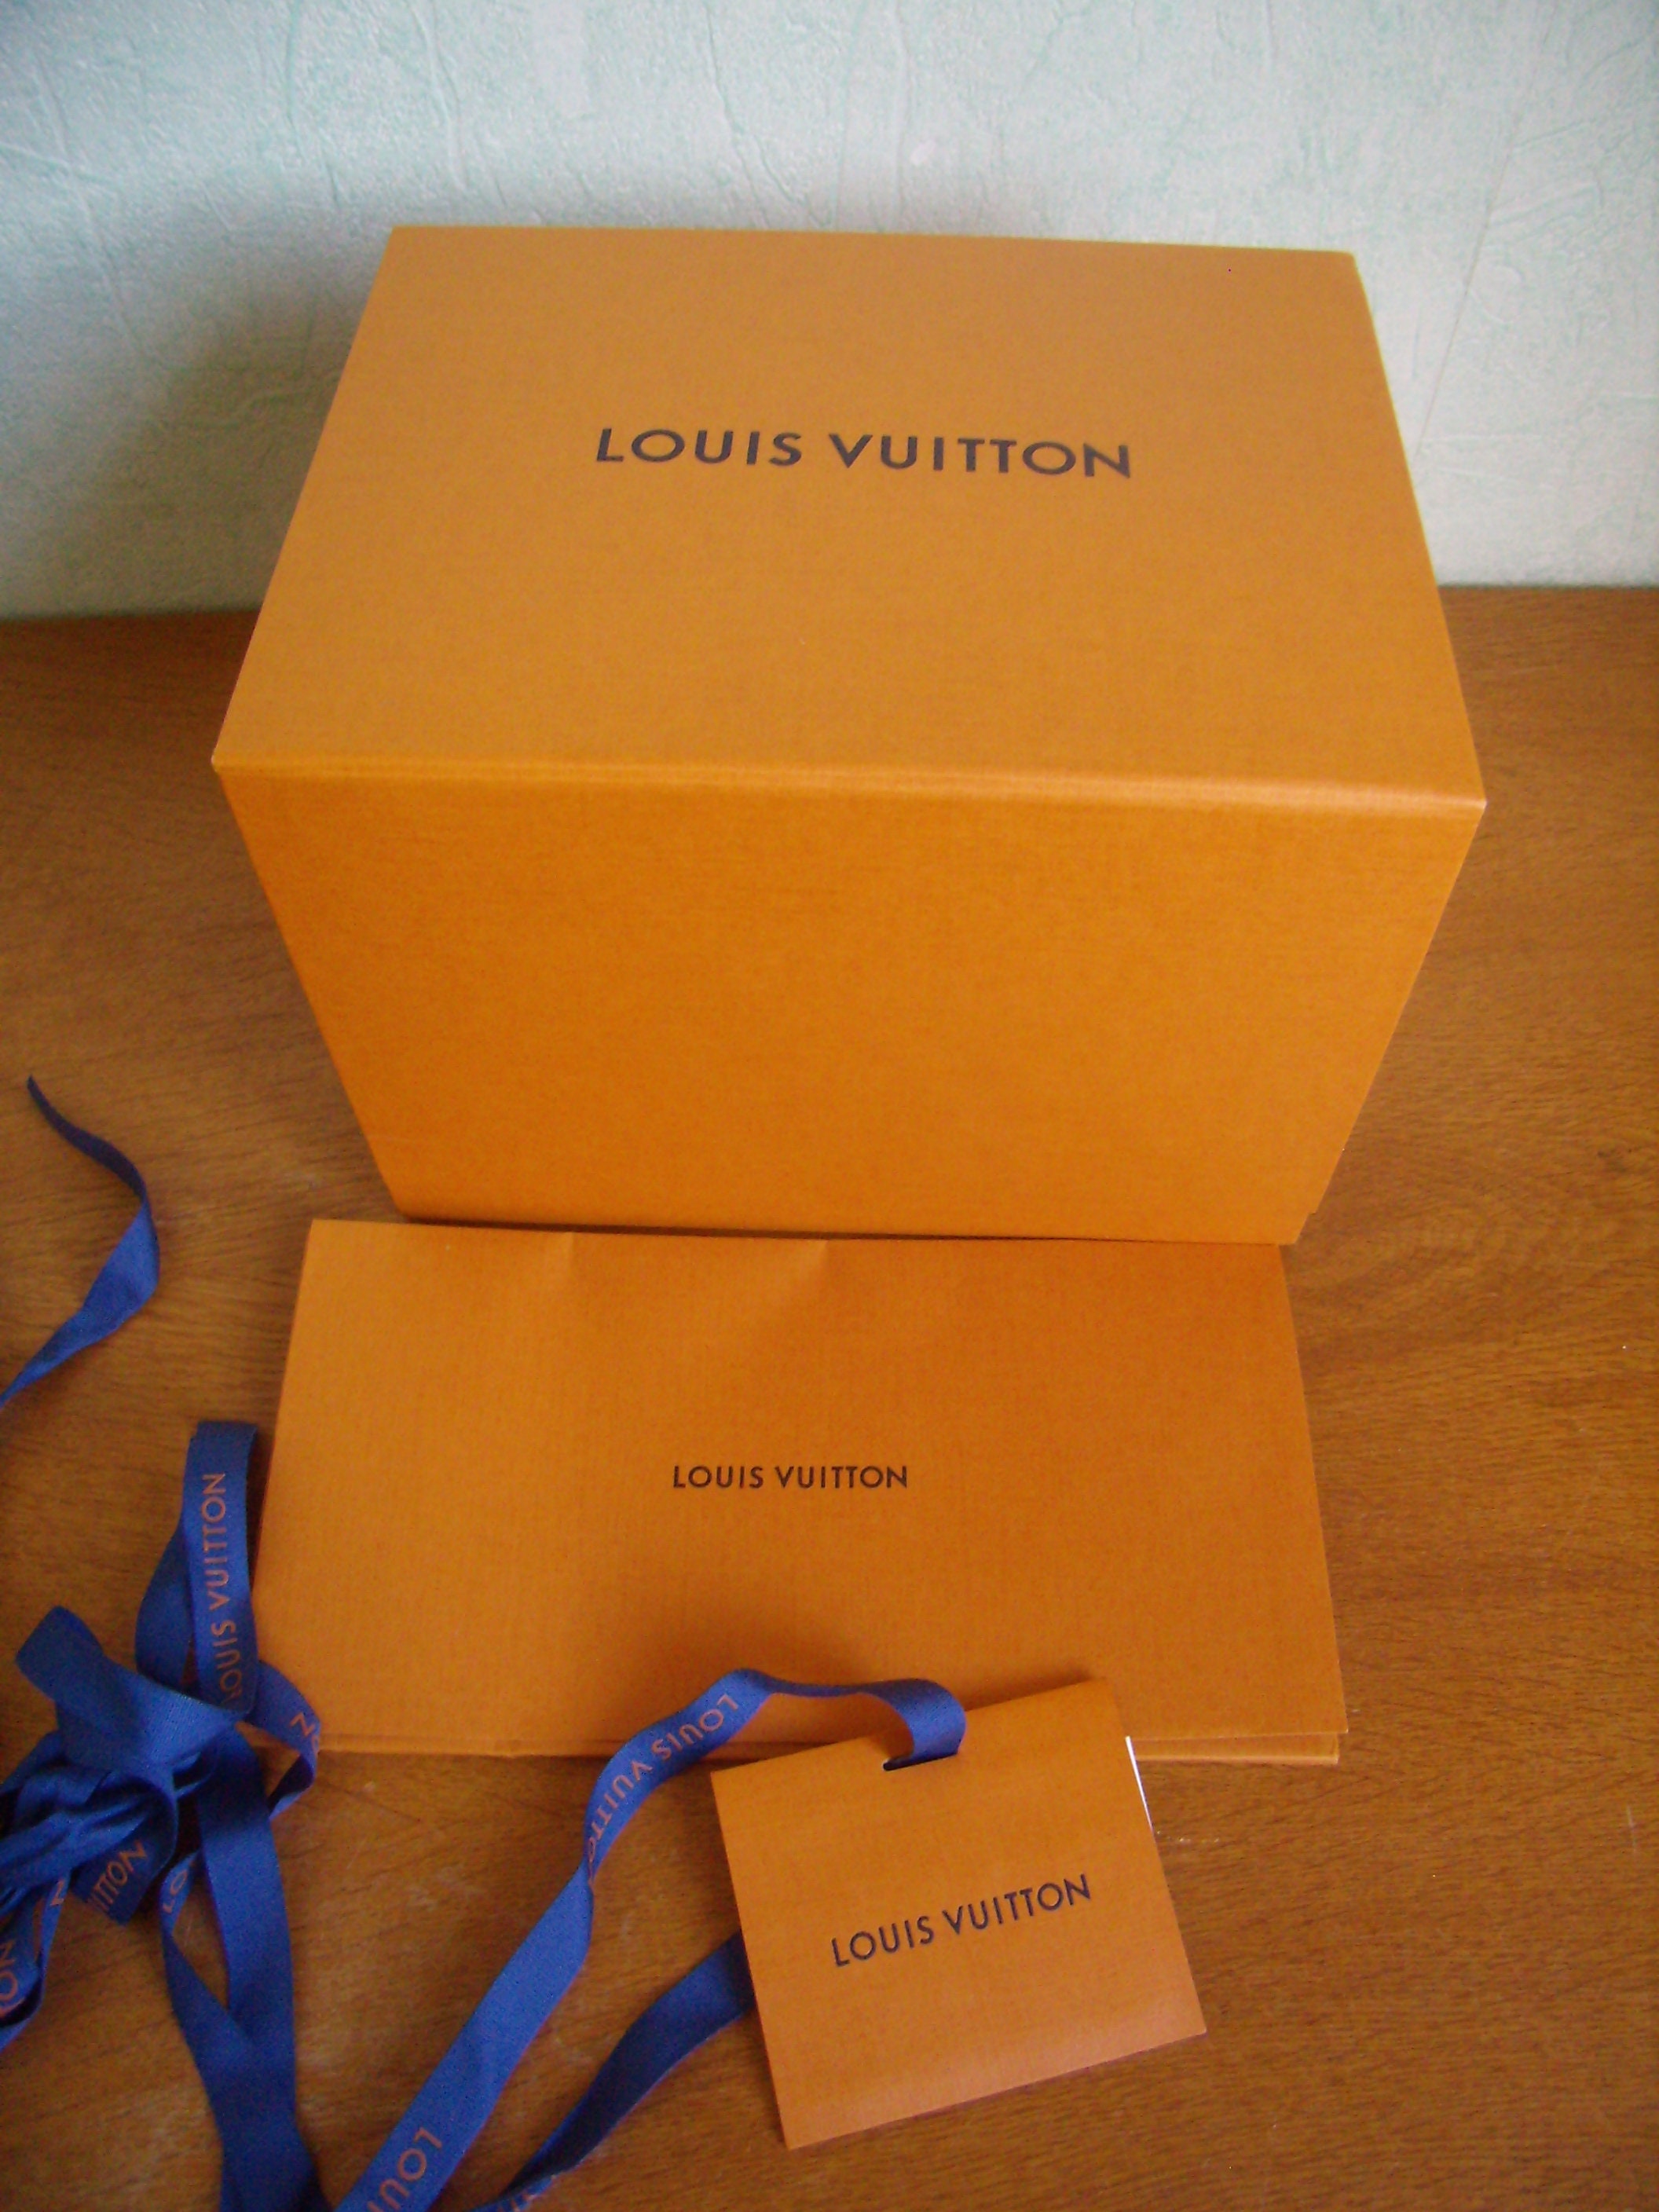 Una caja de Louis Vuitton imagen de archivo editorial. Imagen de